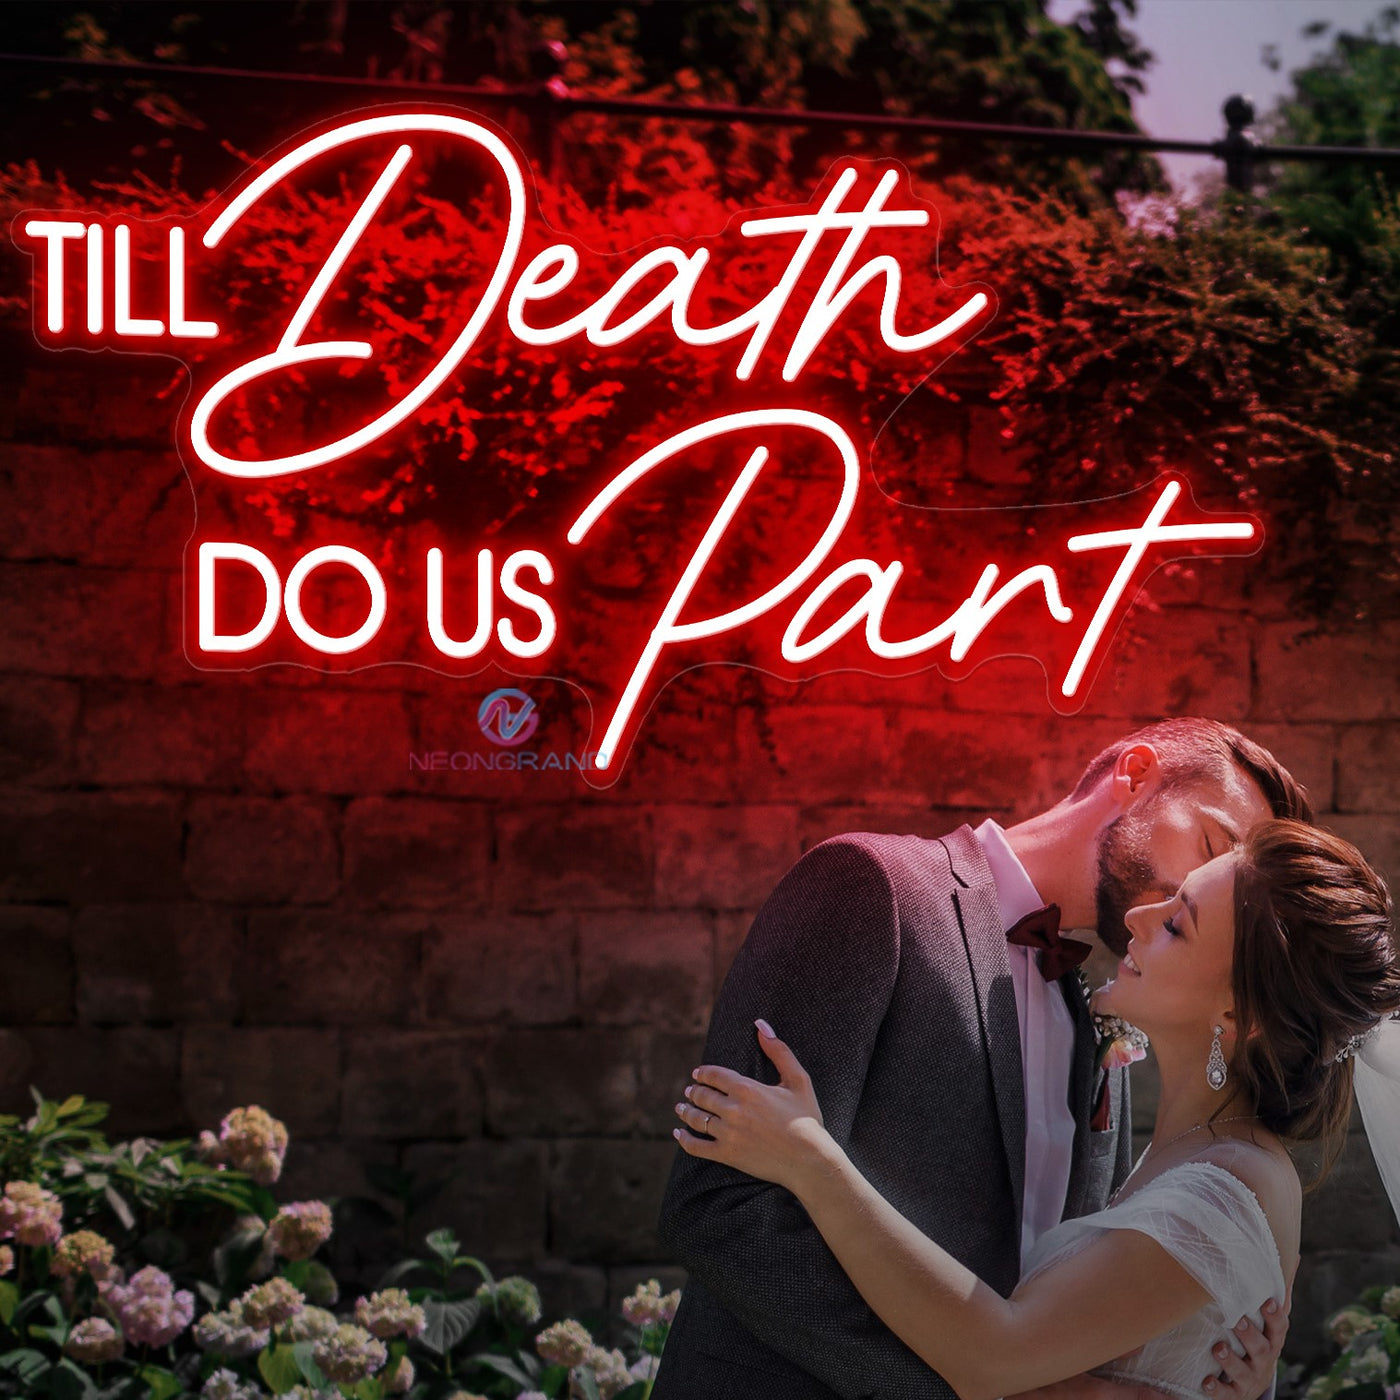 Til Death Do Us Part Neon Sign Wedding Led Light red